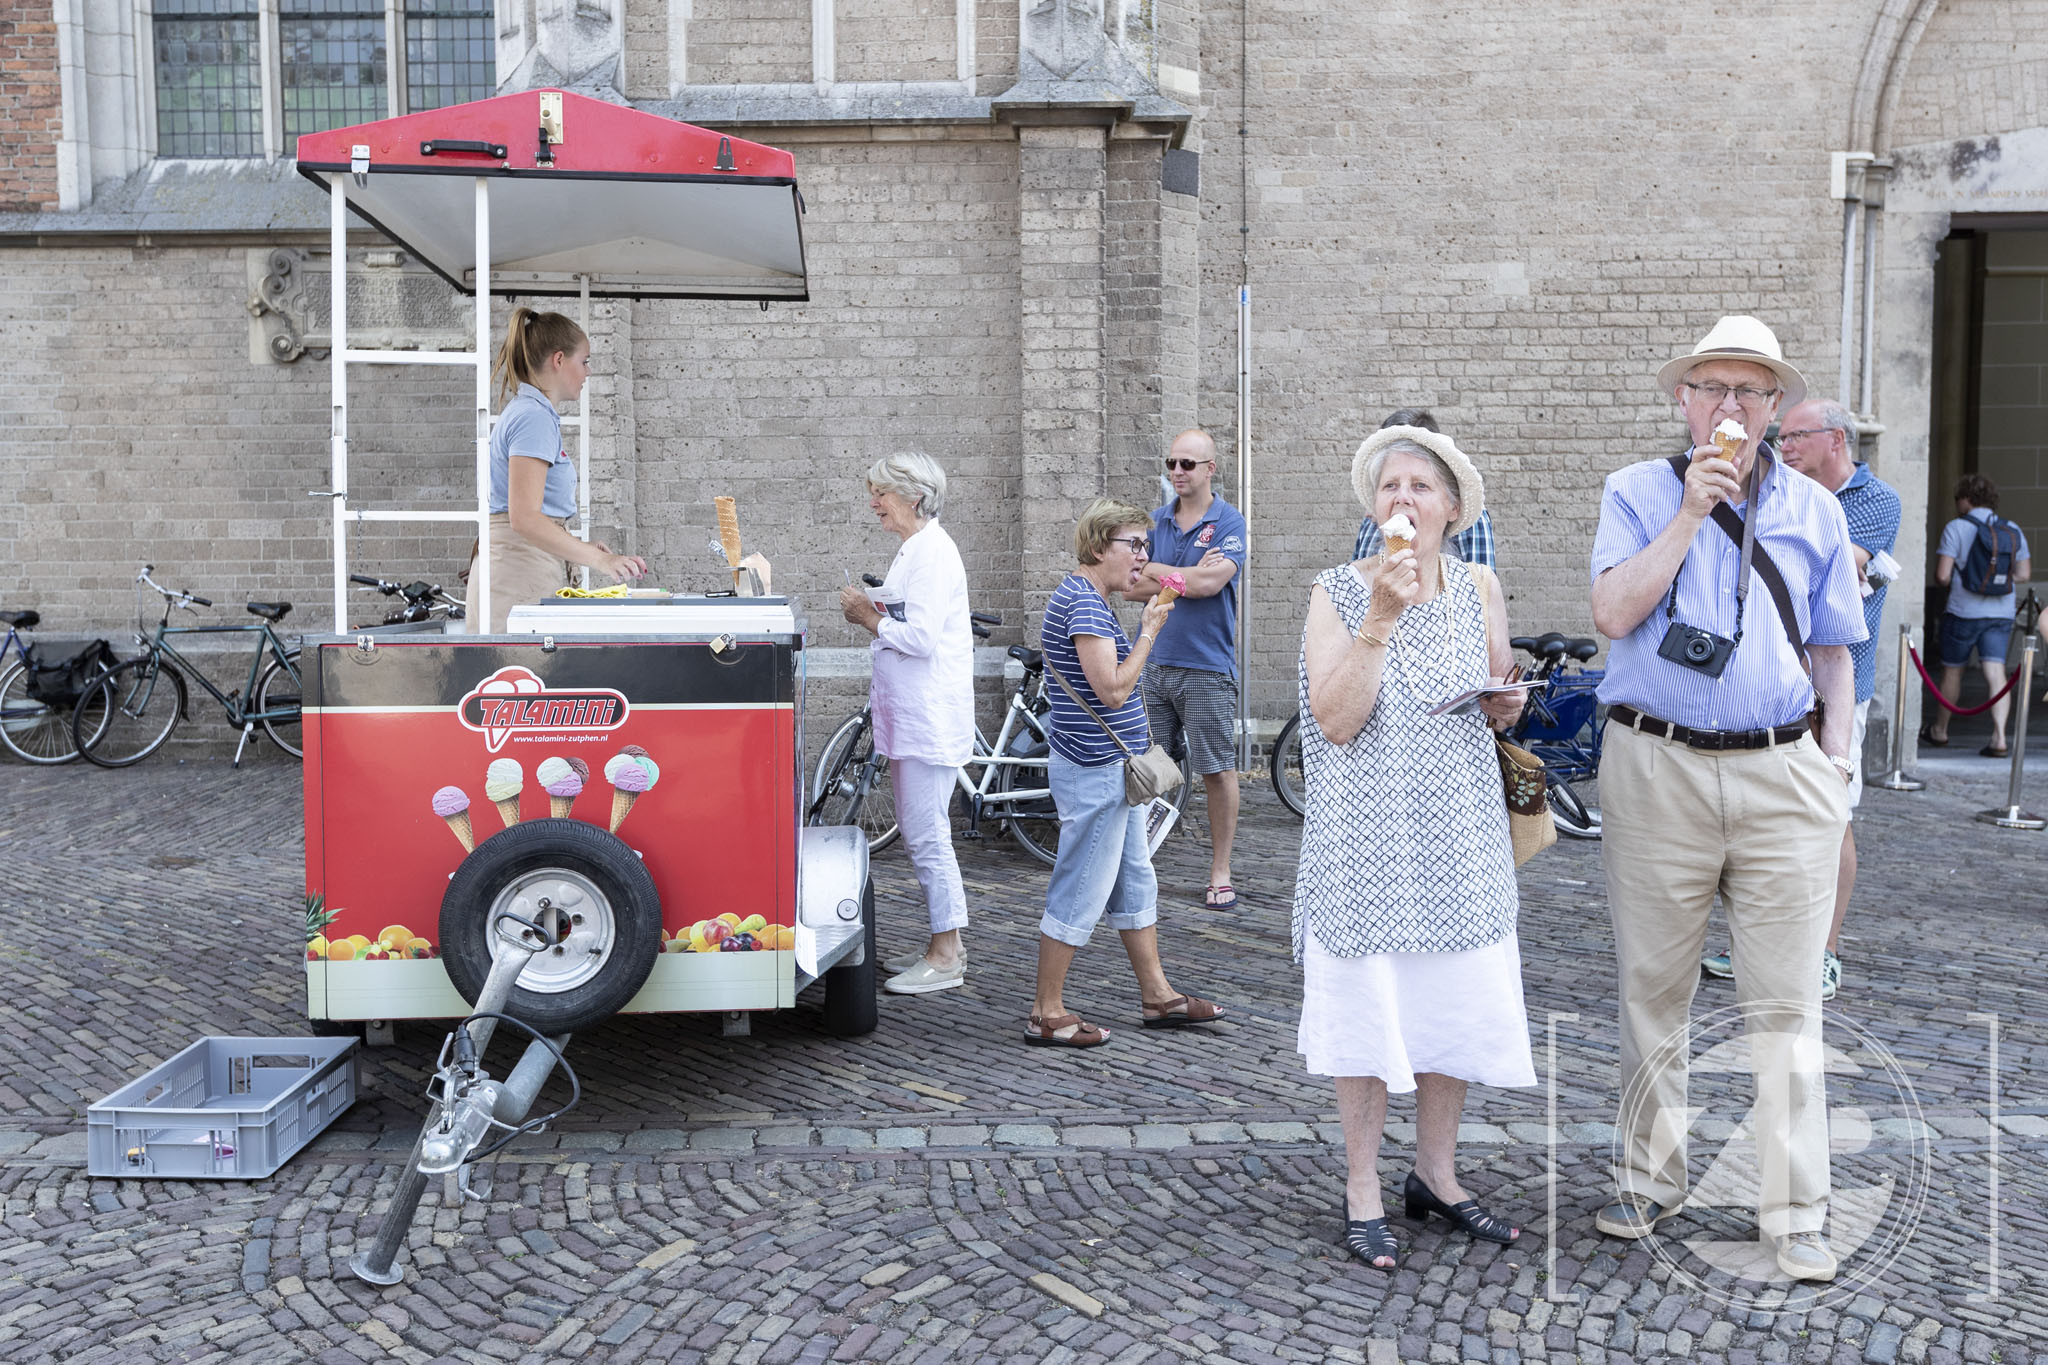 Verkoeling bij World Press Photo in Zutphen. Bezoekers kregen na hun bezoek aan de fototentoonstelling een ijsje aangeboden door de organisatie Zutphen Doen.